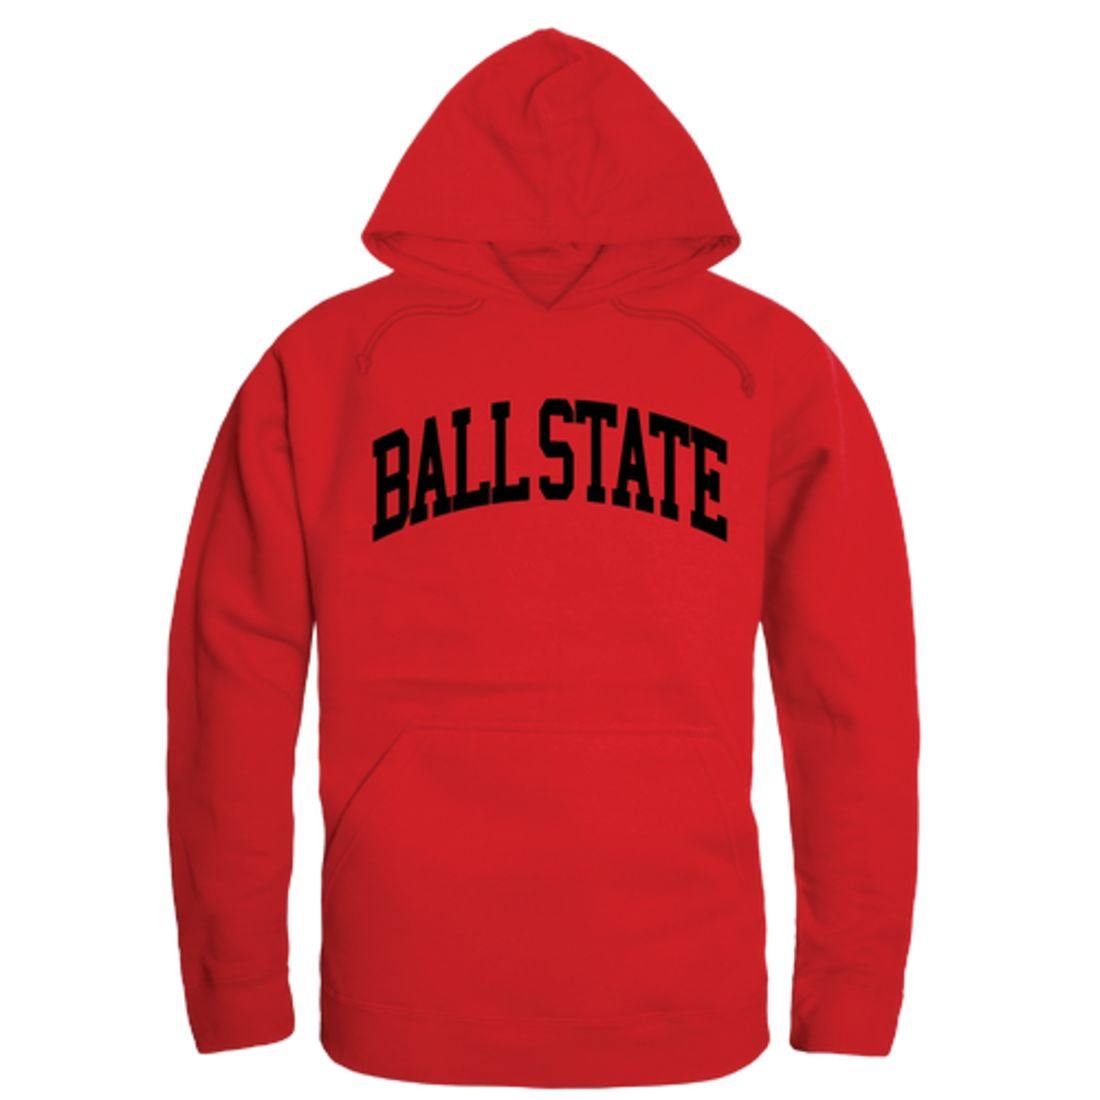 BSU Ball State University College Hoodie Sweatshirt Red